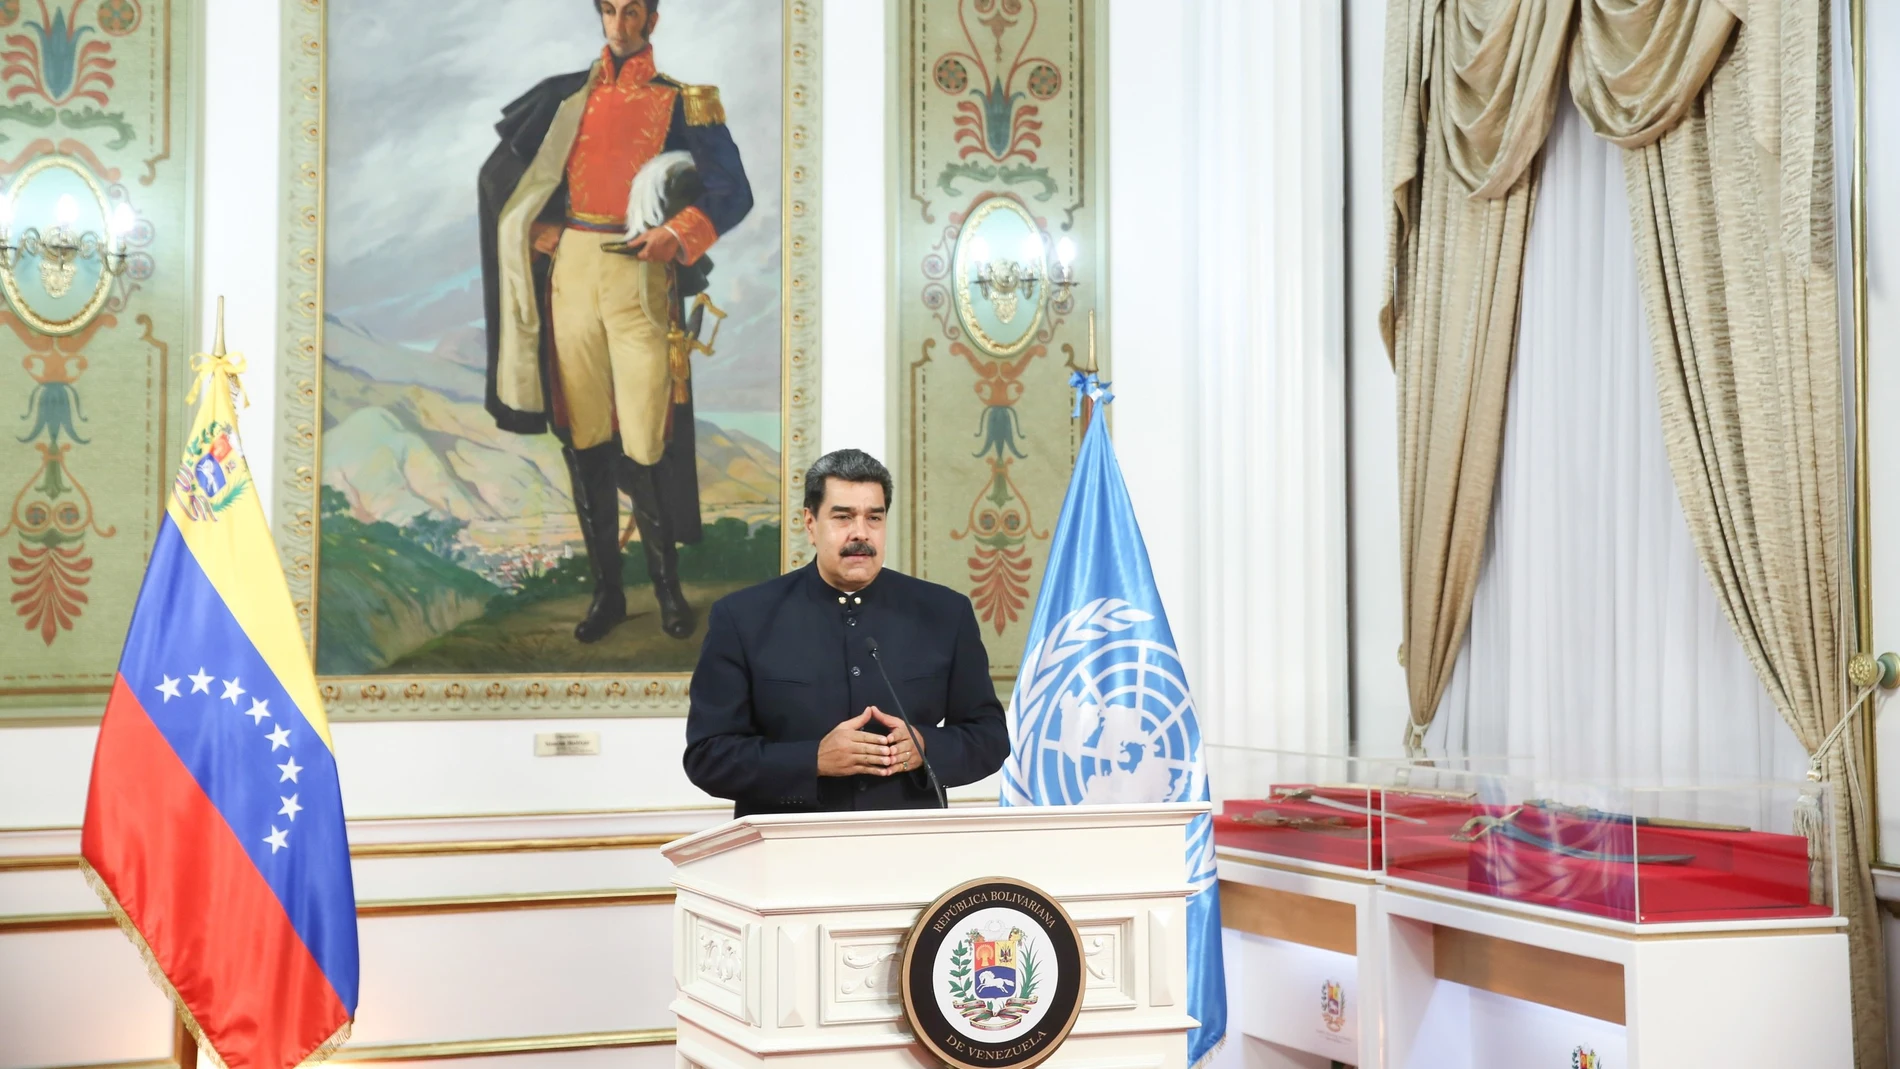 Fotografía cedida por prensa de Miraflores del presidente venezolano Nicolás Maduro